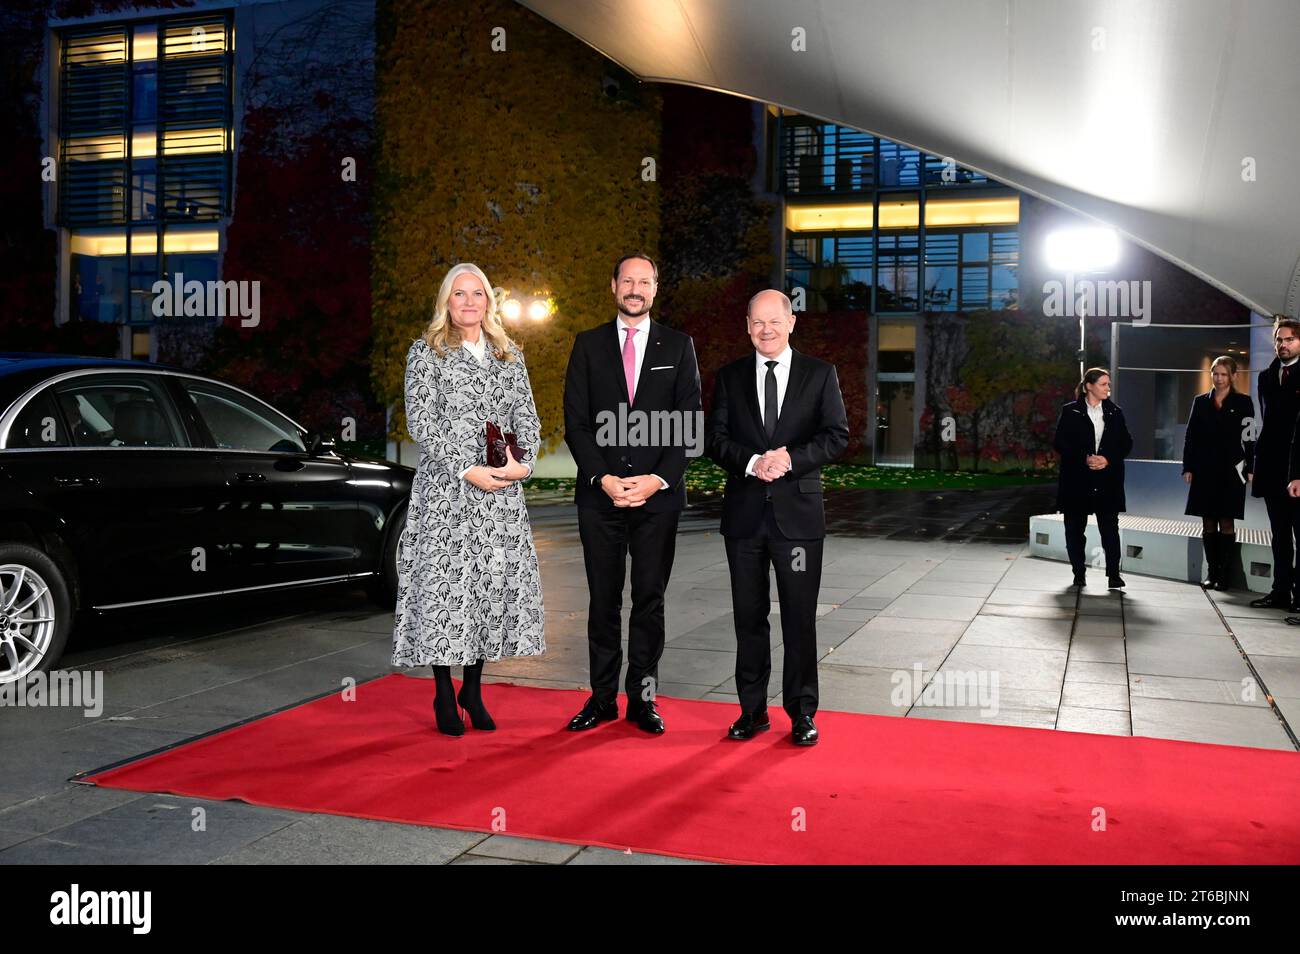 Kronprinzessin mette-Marit von Norwegen, Kronprinz Haakon von Norwegen und Olaf Scholz beim Empfang des Bundeskanzlers zu freundschaftlichen Gespräche Foto Stock